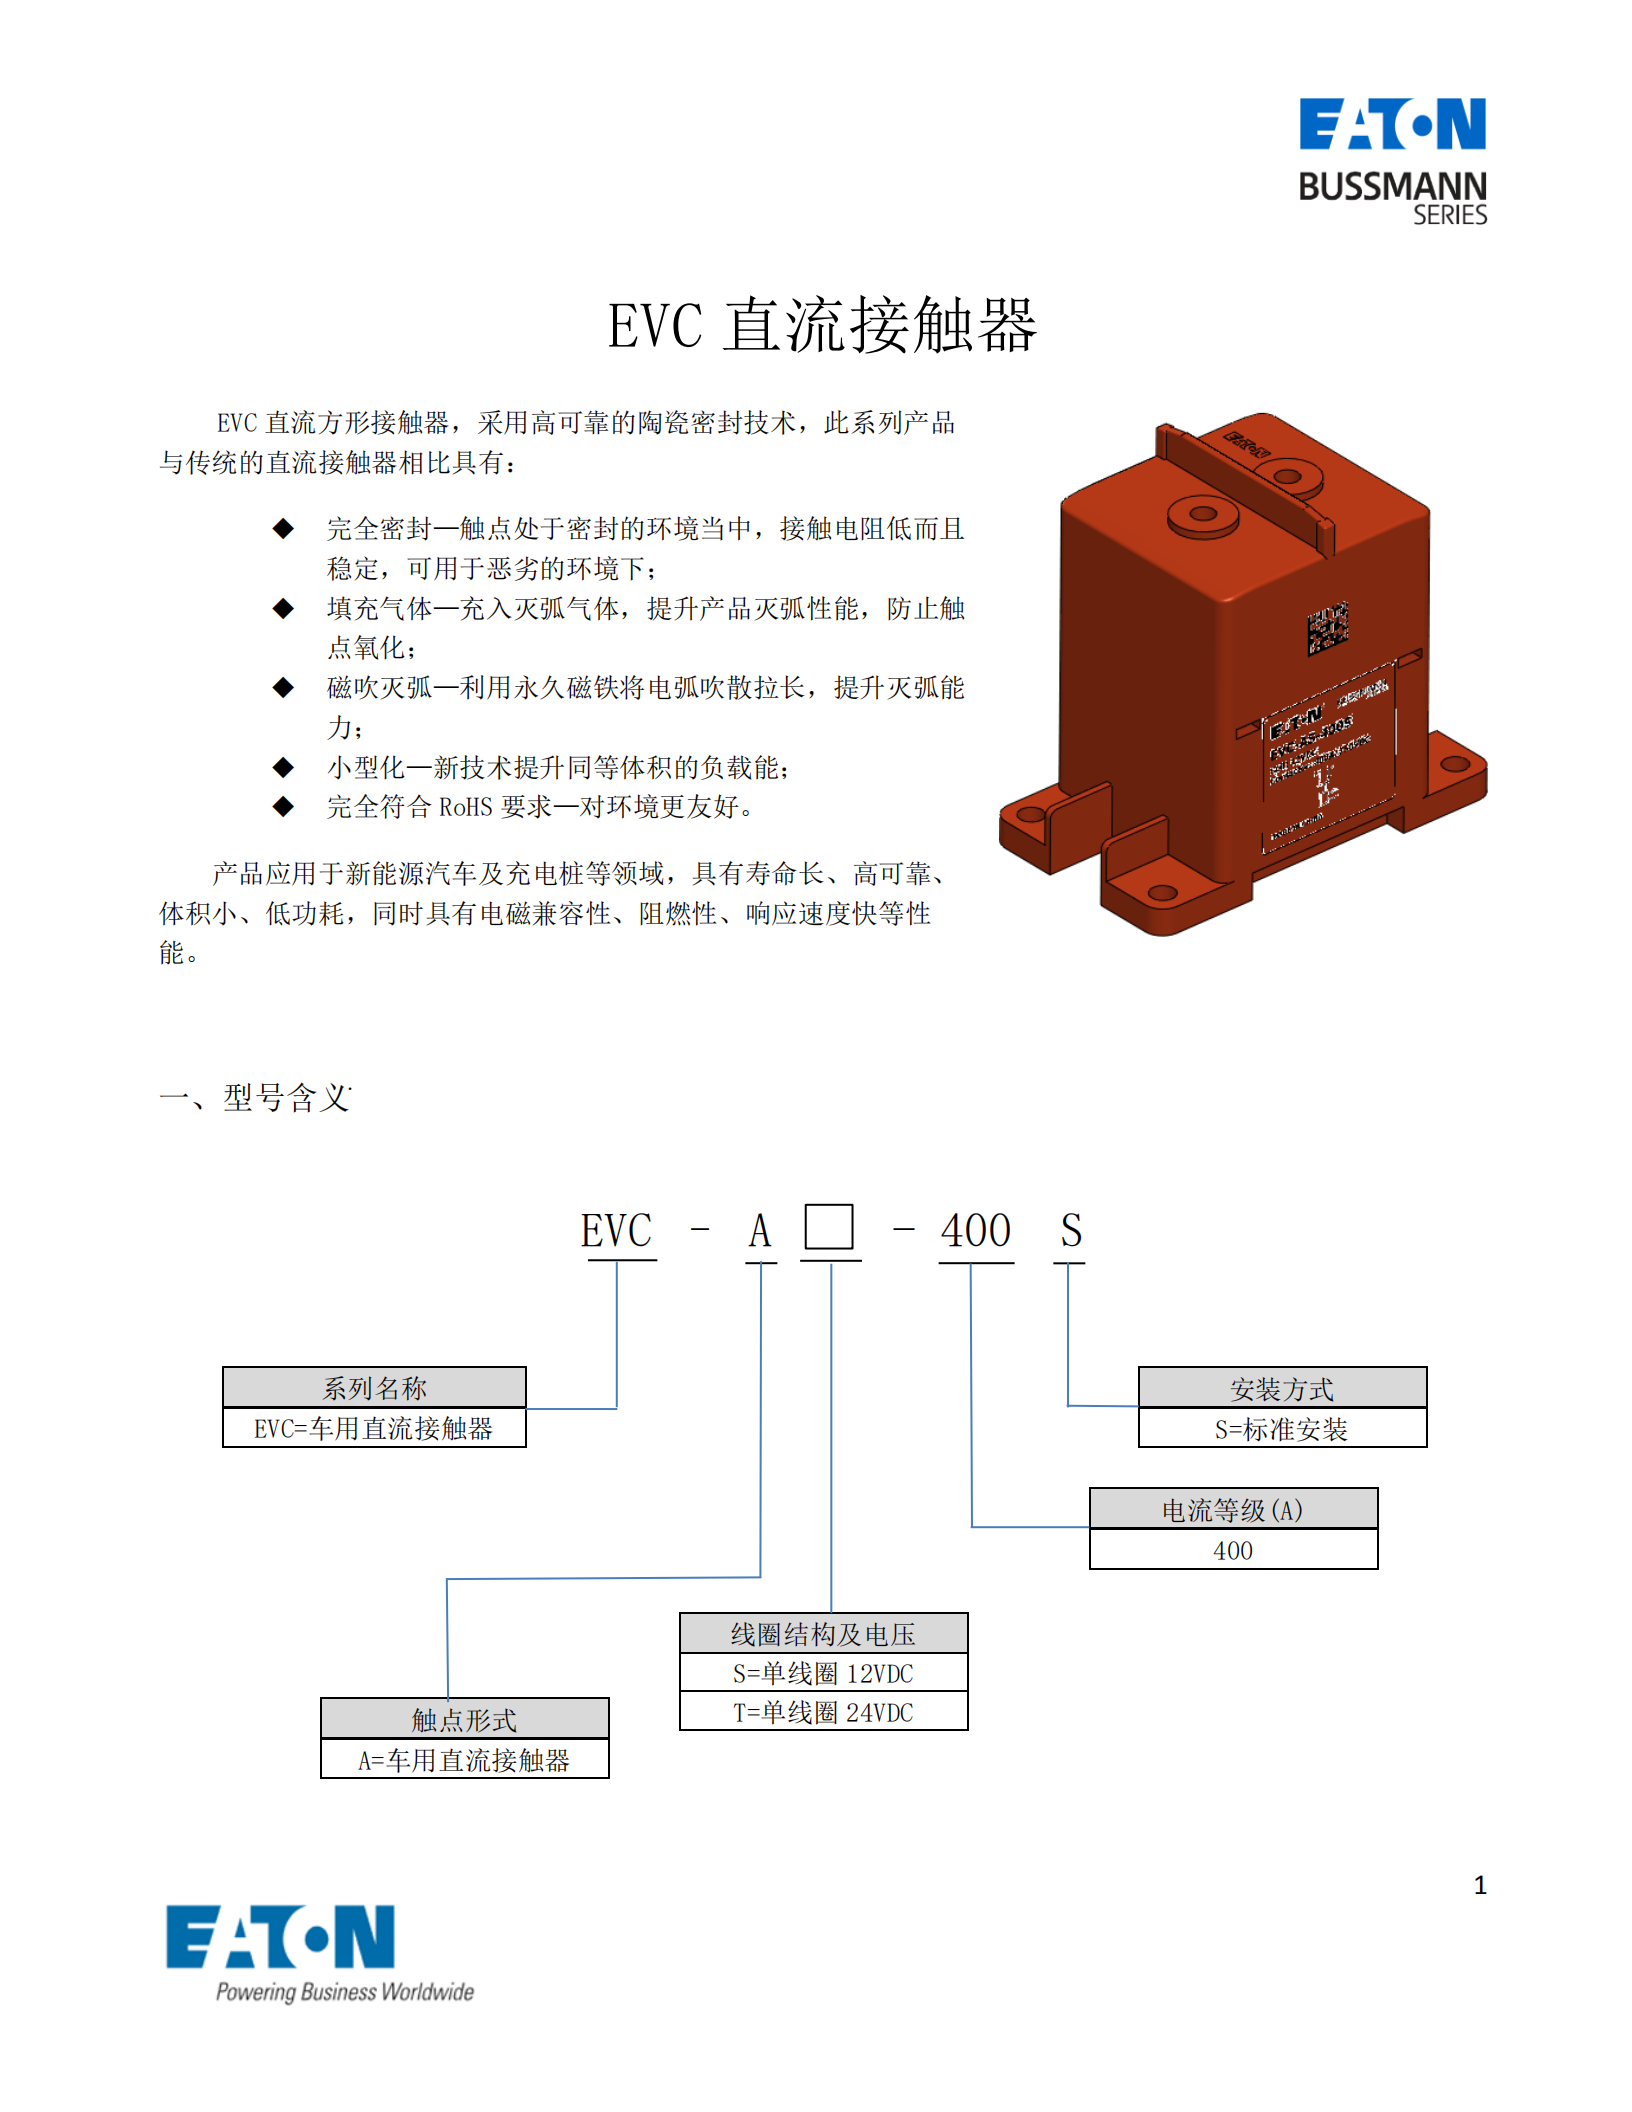 EVC-AS-400S直流接觸器型號含義